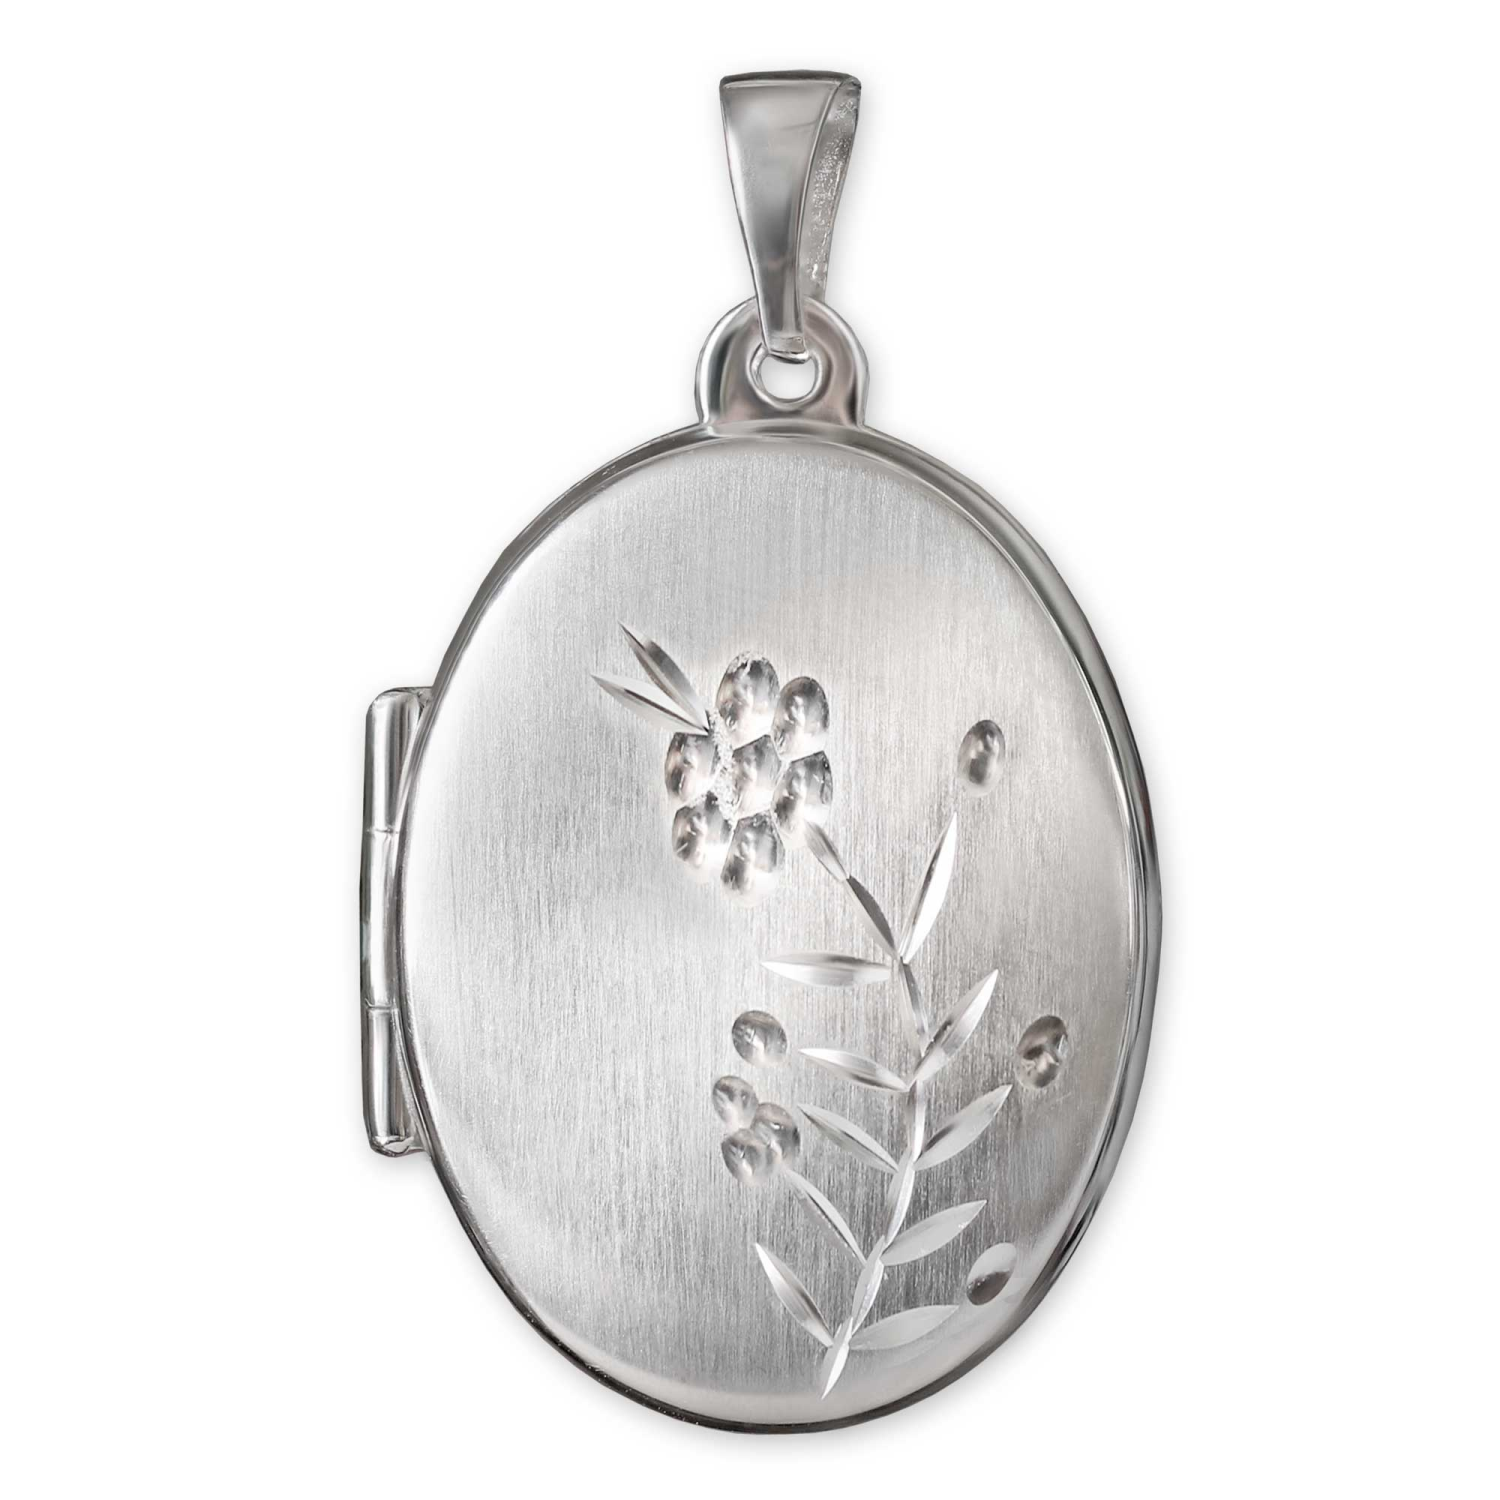 Silberner Anhänger Medaillon oval 21 mm seidenmatt mit verzierter Blumenranke diamantiert glänzend für 2 Bilder STERLING SILBER 925